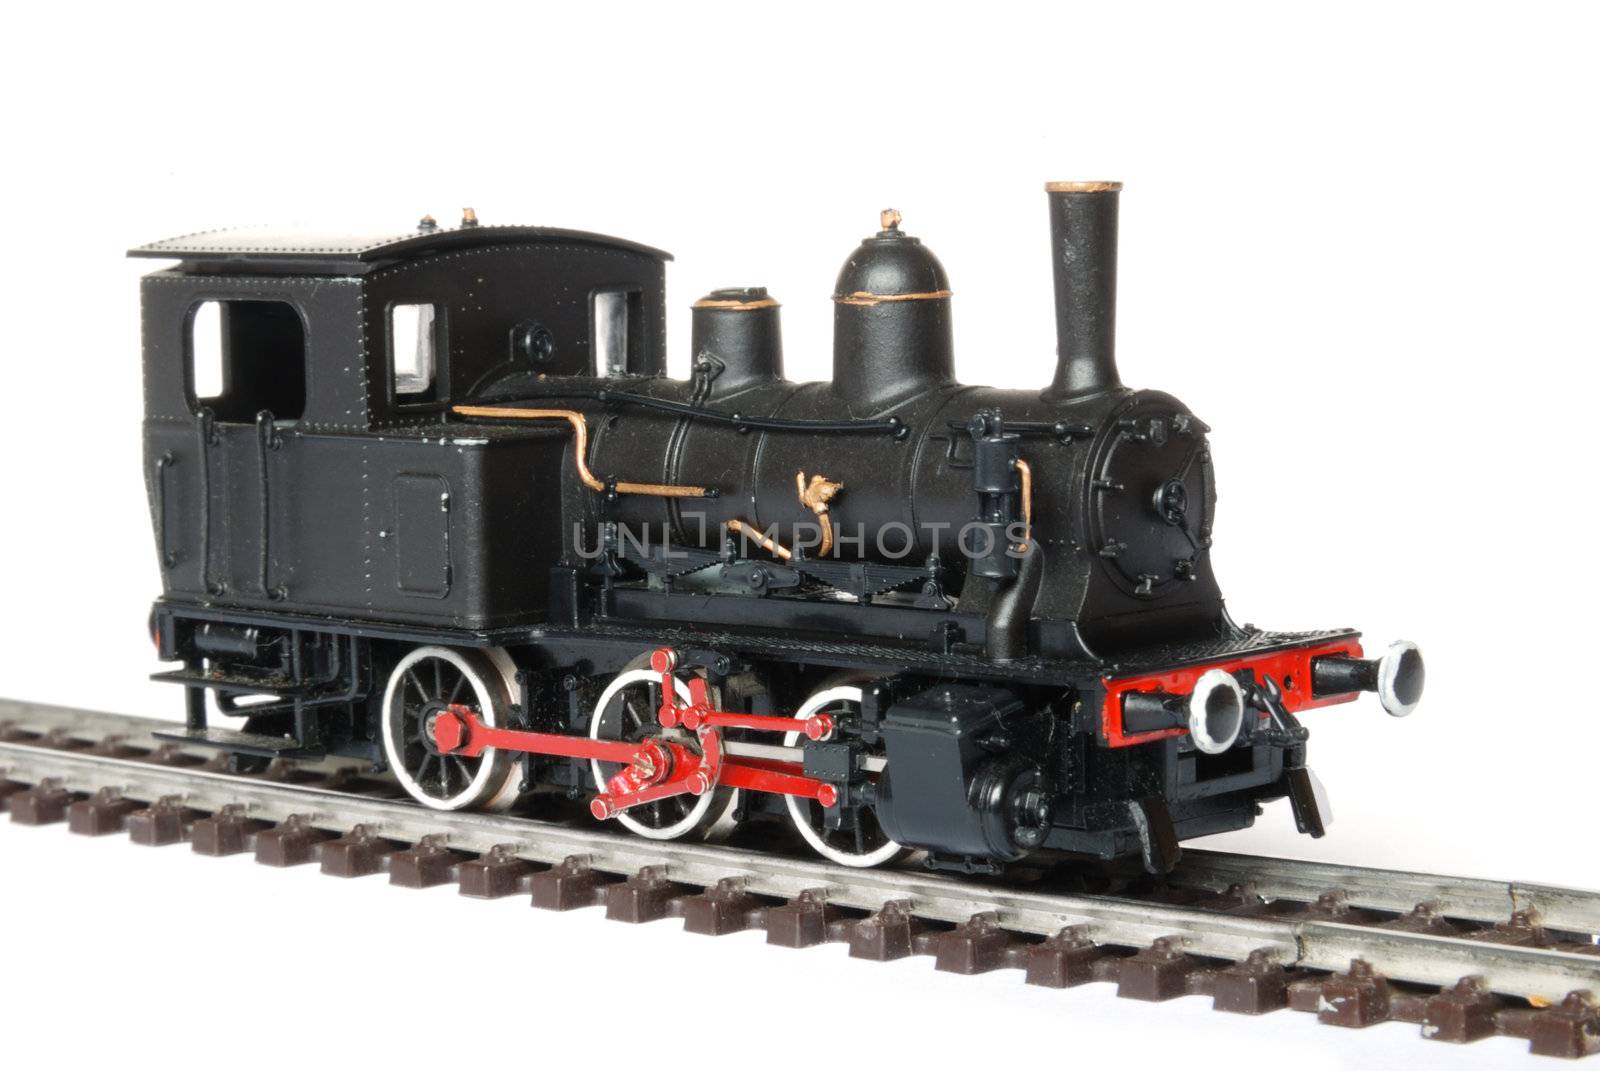 Model railway by fahrner